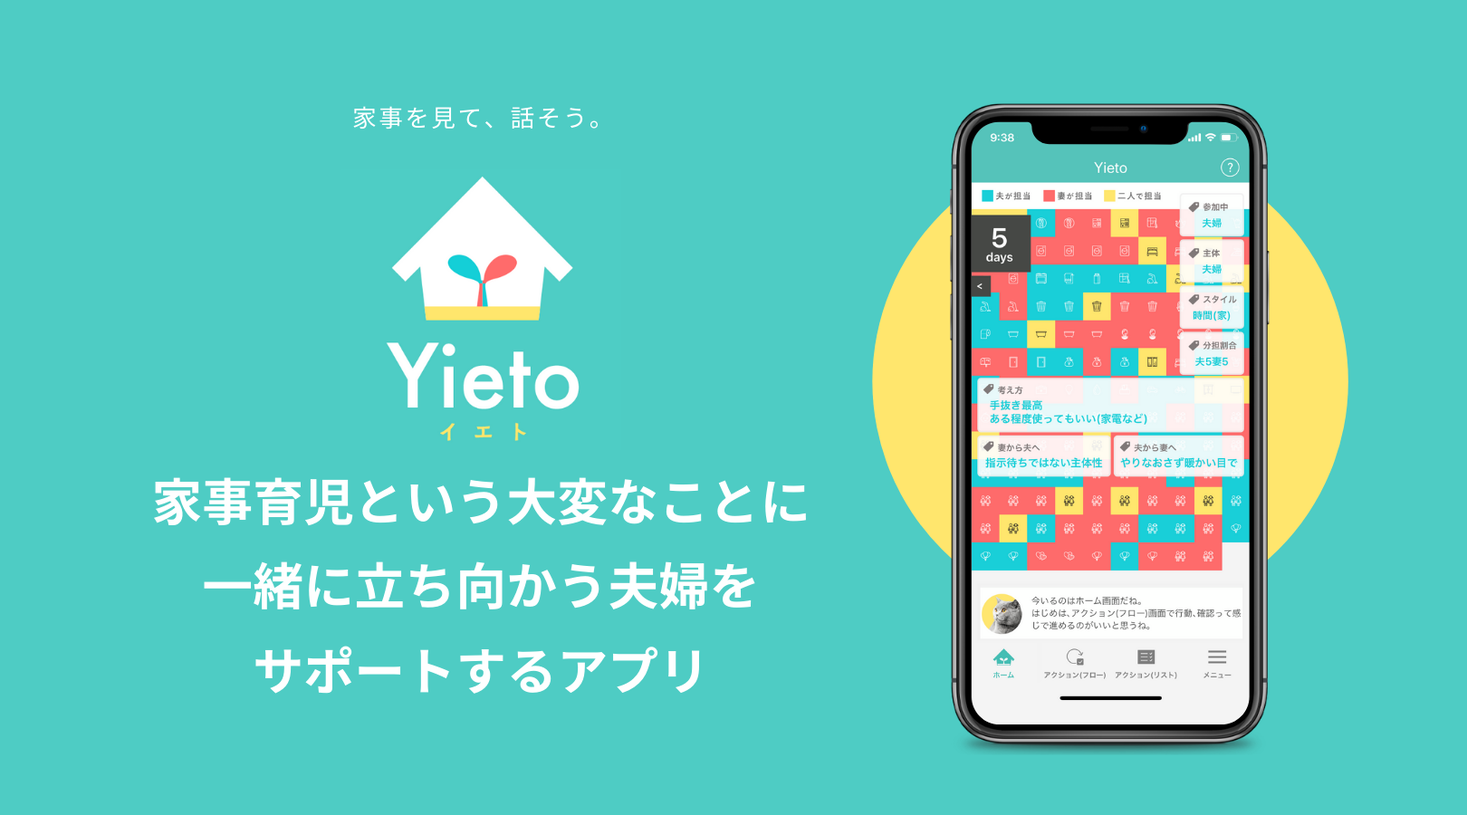 Ios版4万ダウンロード 夫婦の家事タスクを可視化し 二人にとってハッピーな家事分担の実現をサポートするアプリ Yieto Android版をリリース 株式会社フラップのプレスリリース